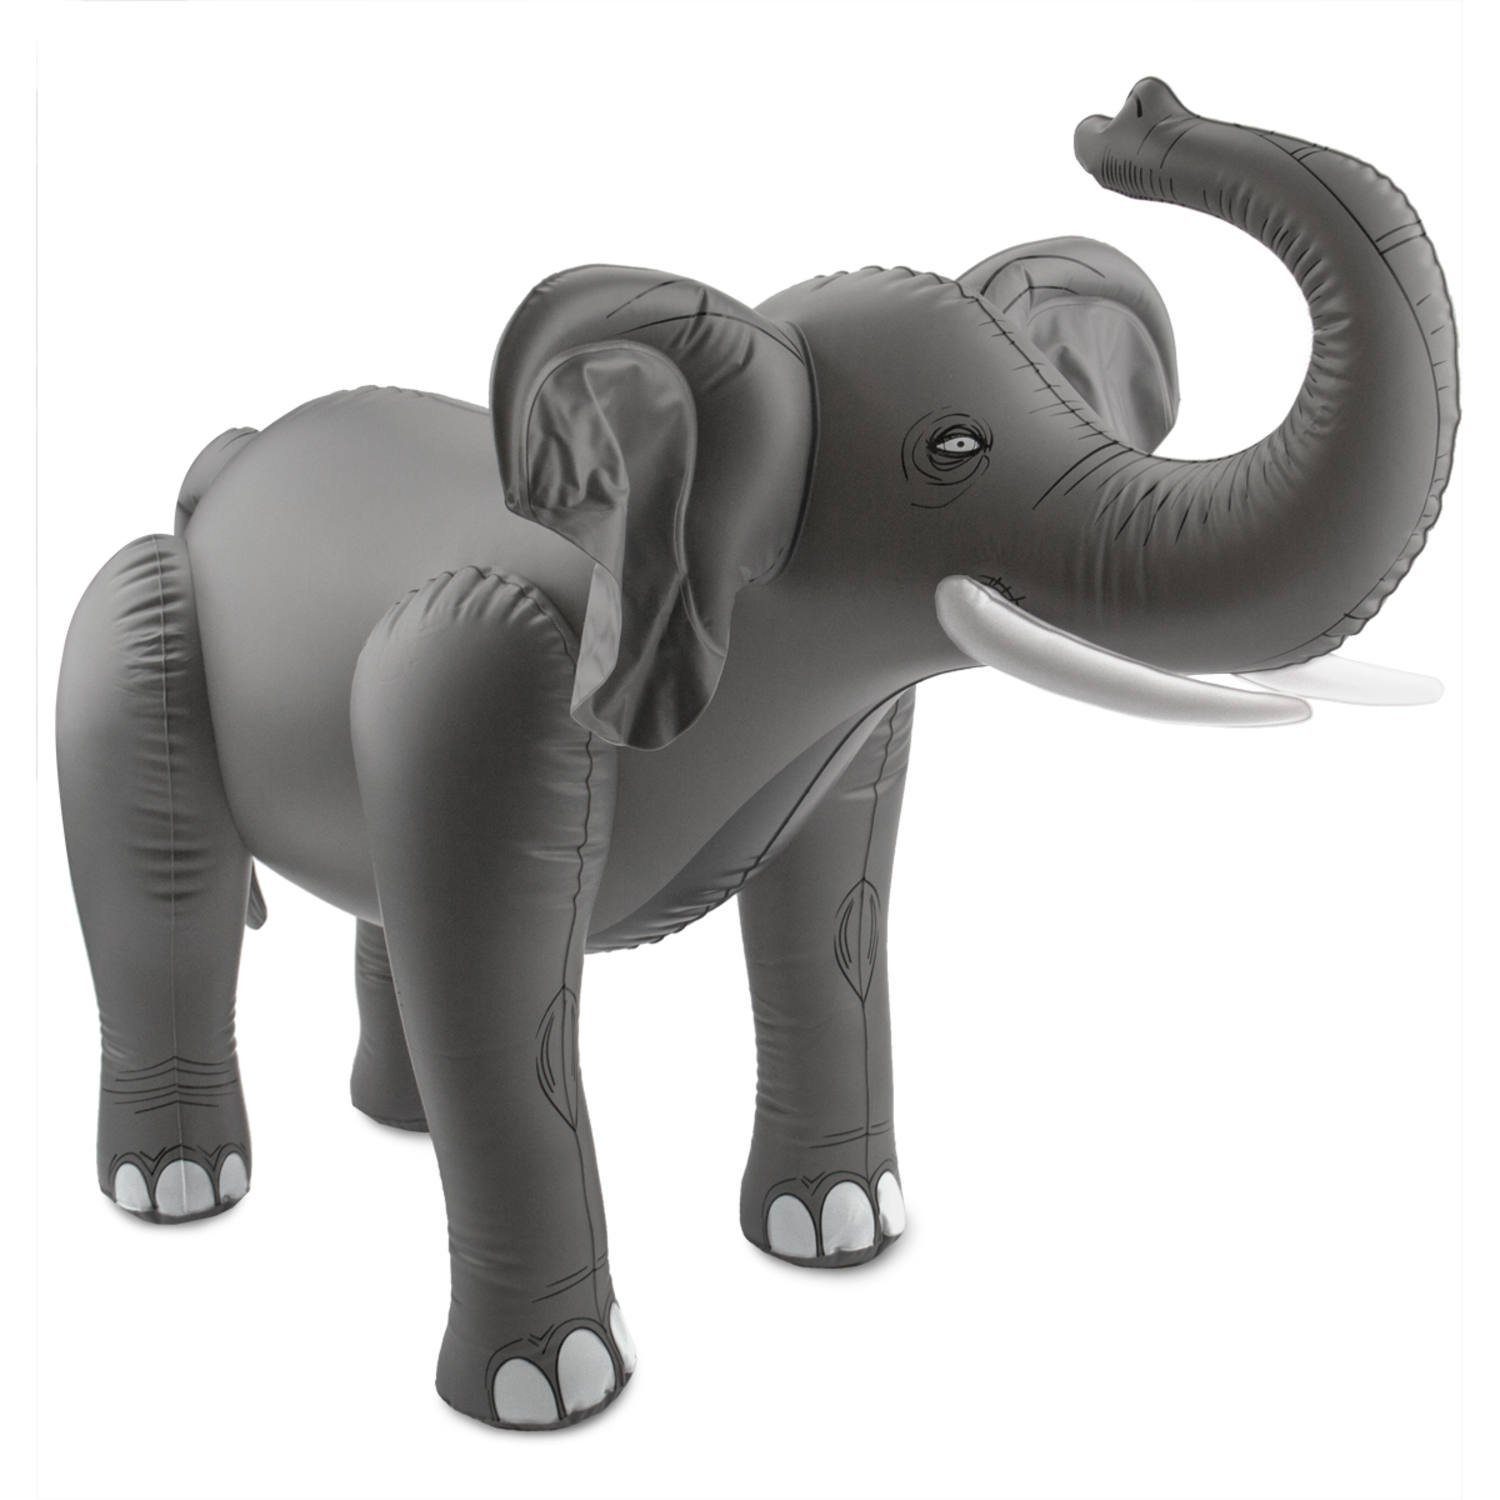 Folat Dekofigur Aufblasbarer Elefant, Partydeko zum Aufpusten für eine tierische Mottoparty, Geburtstag ode